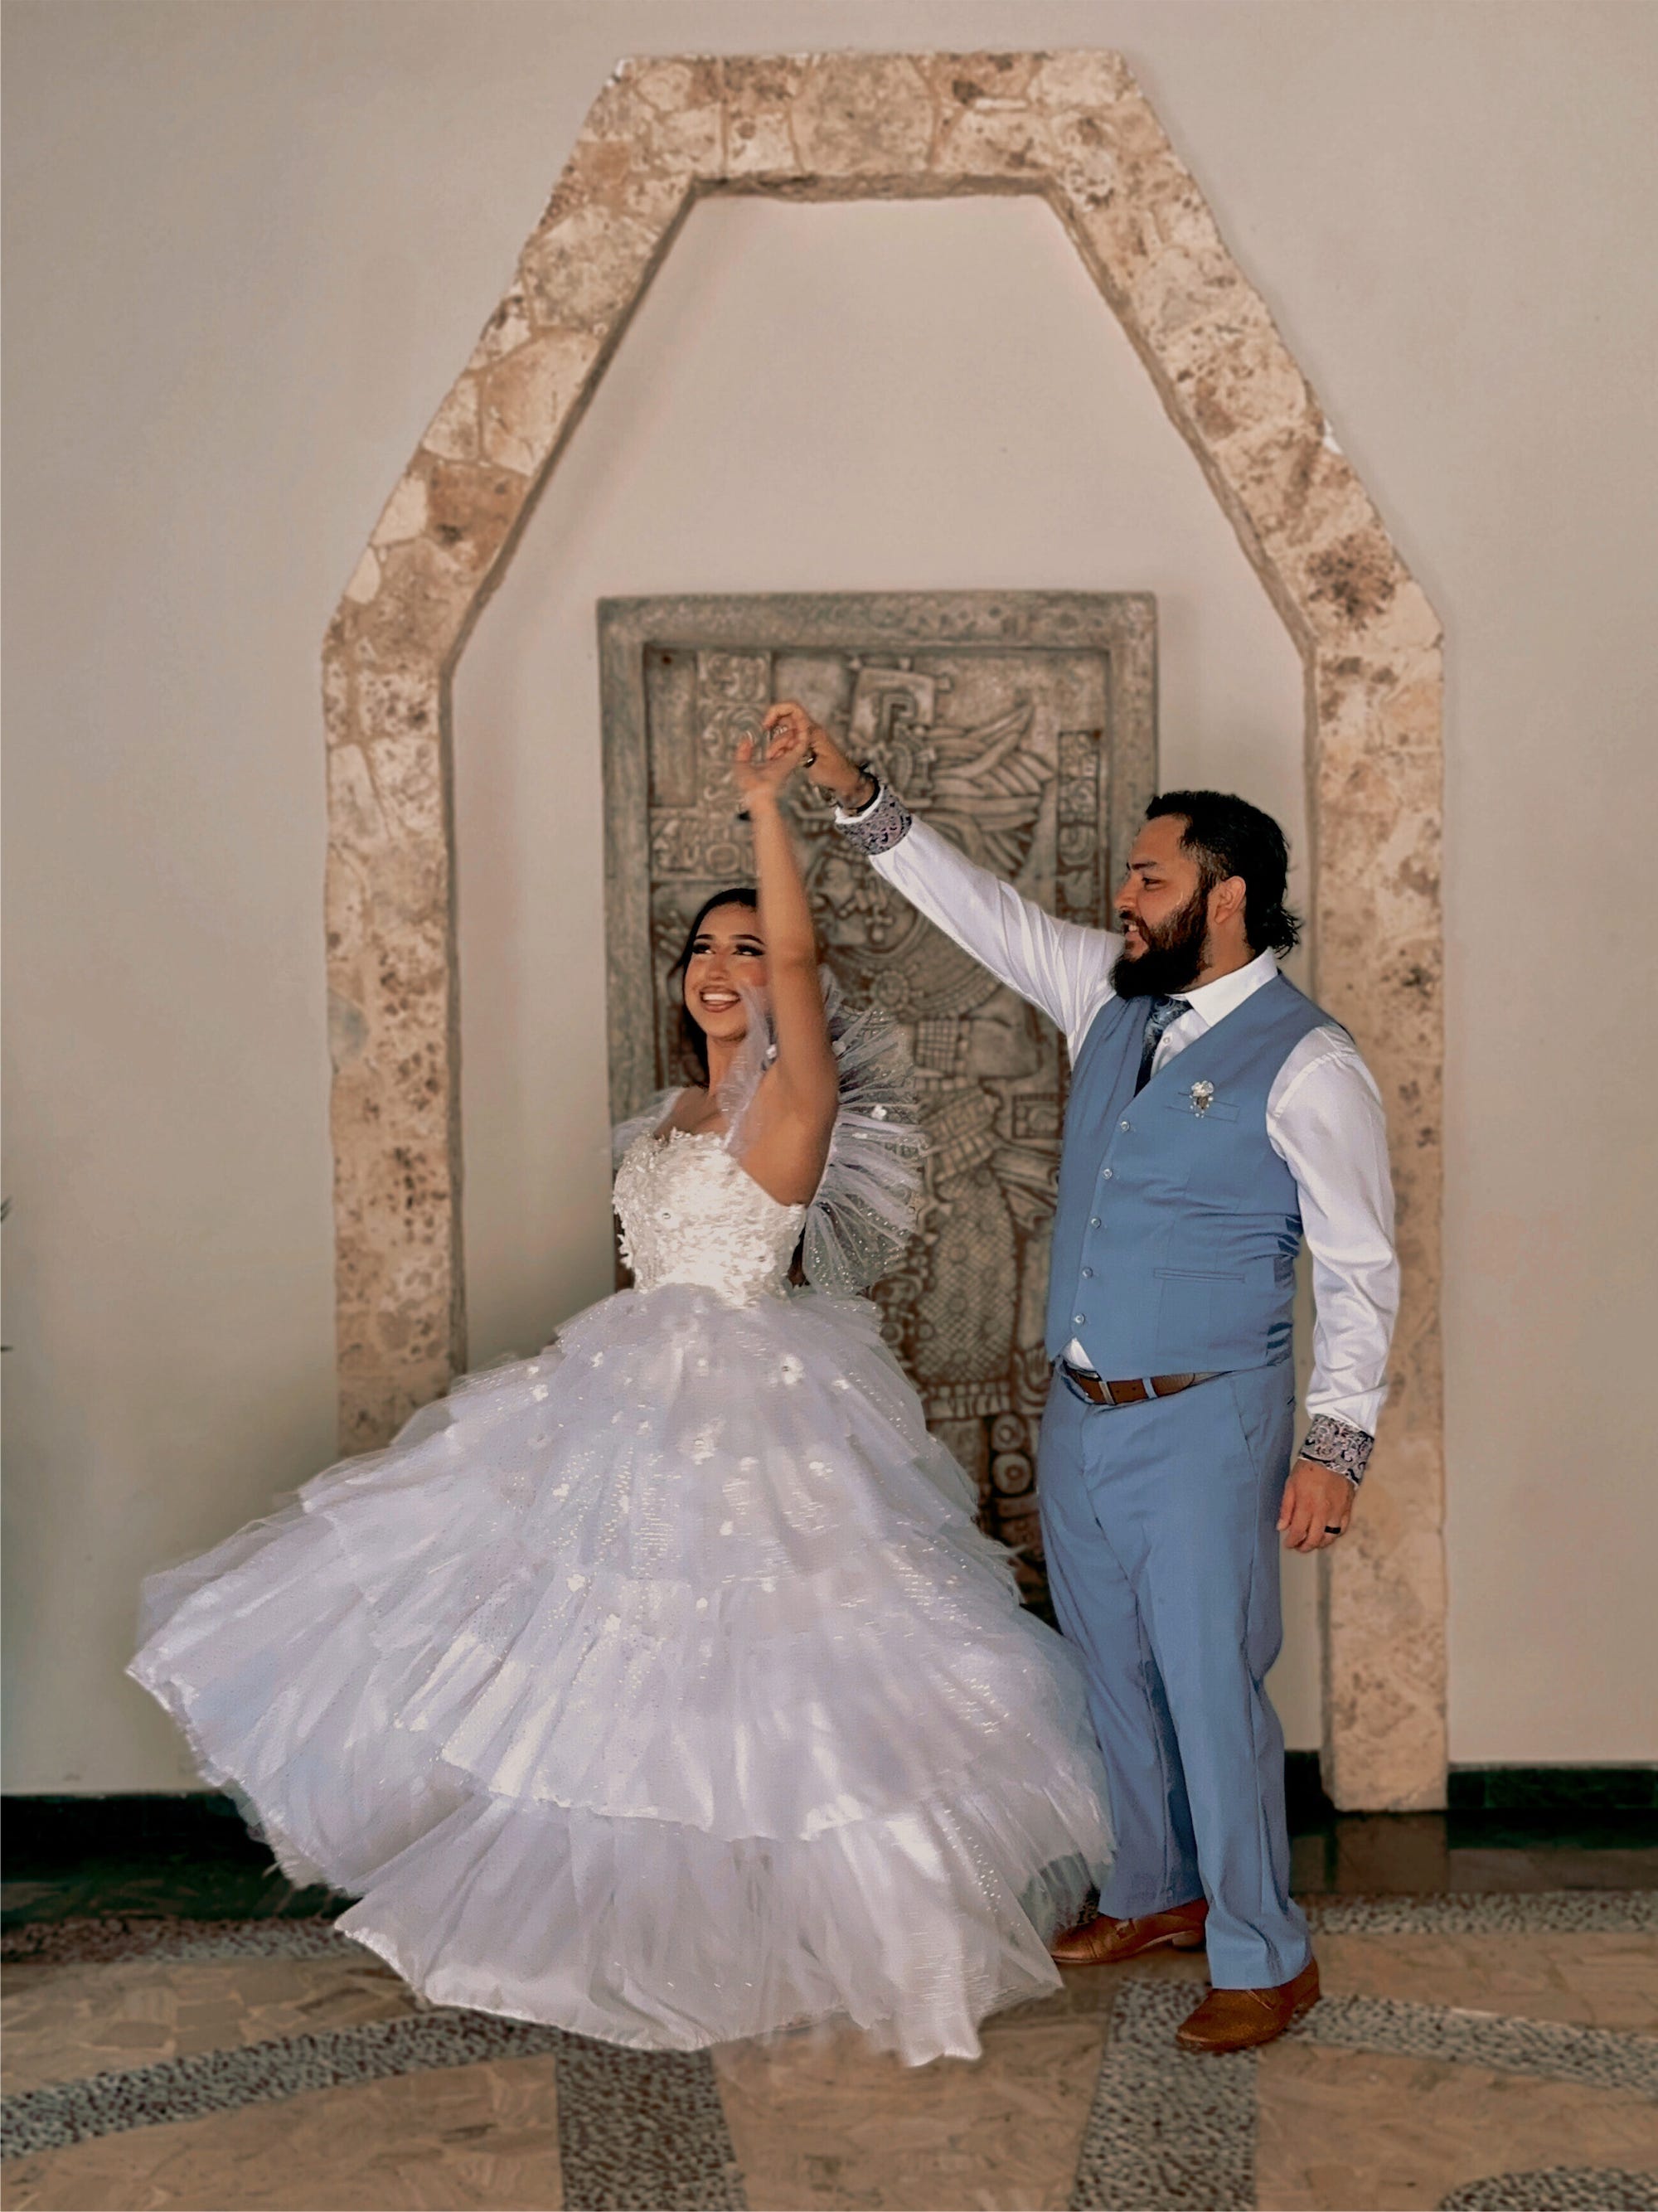 Ein Bräutigam dreht seine Braut in ihrem Hochzeitskleid.